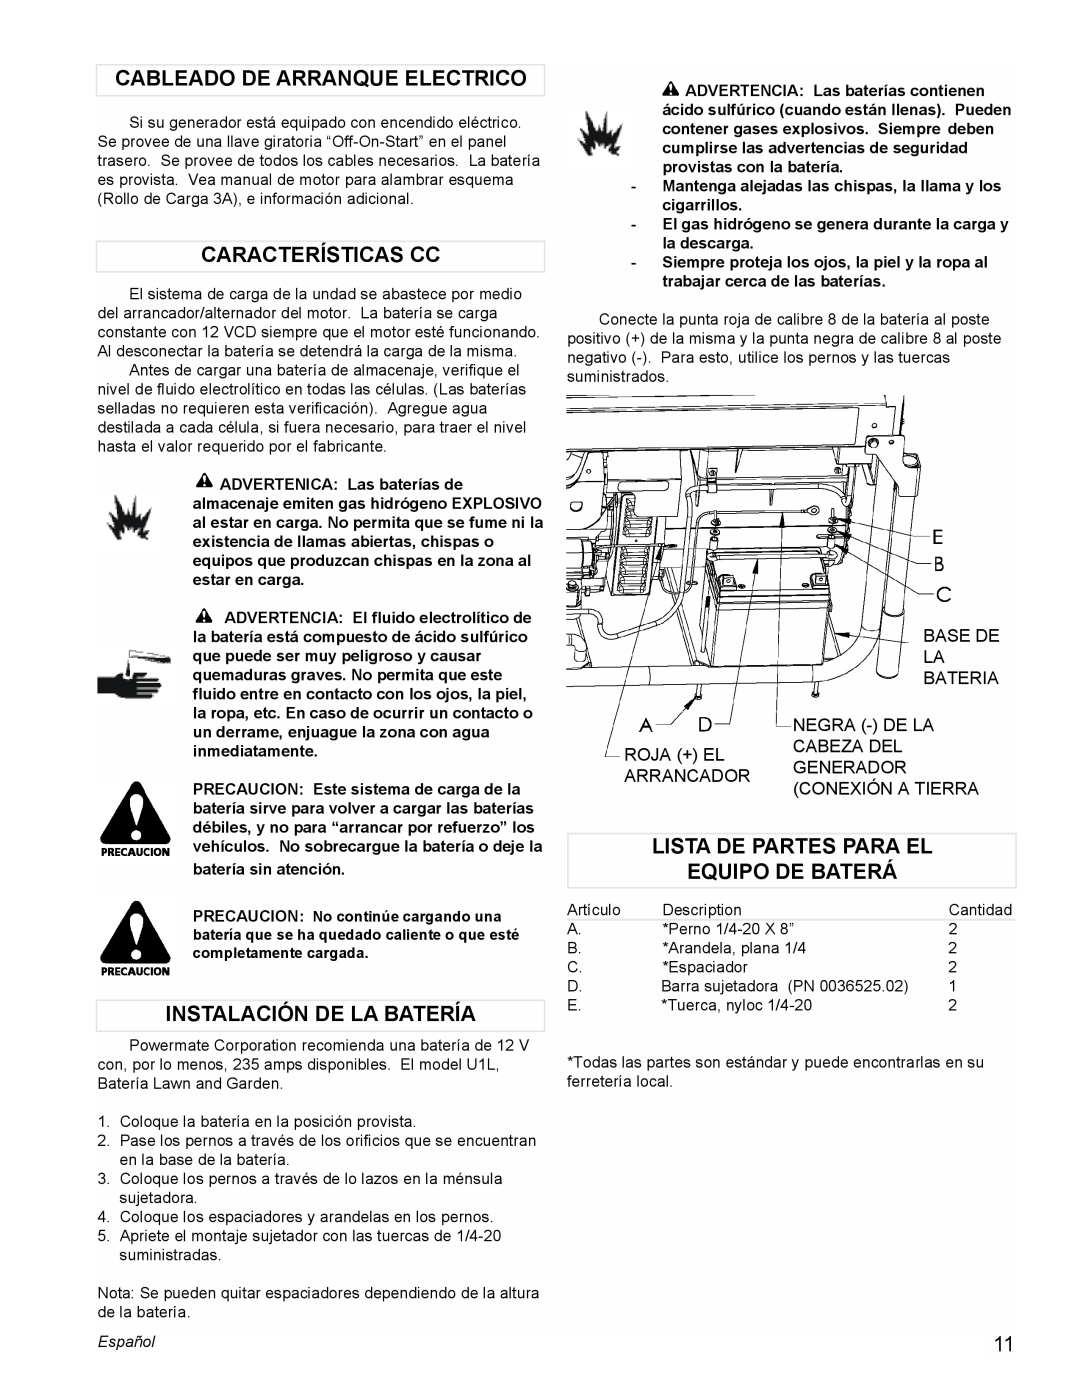 Powermate PM0601350 manual Cableado De Arranque Electrico, Características Cc, Instalación De La Batería, Español 